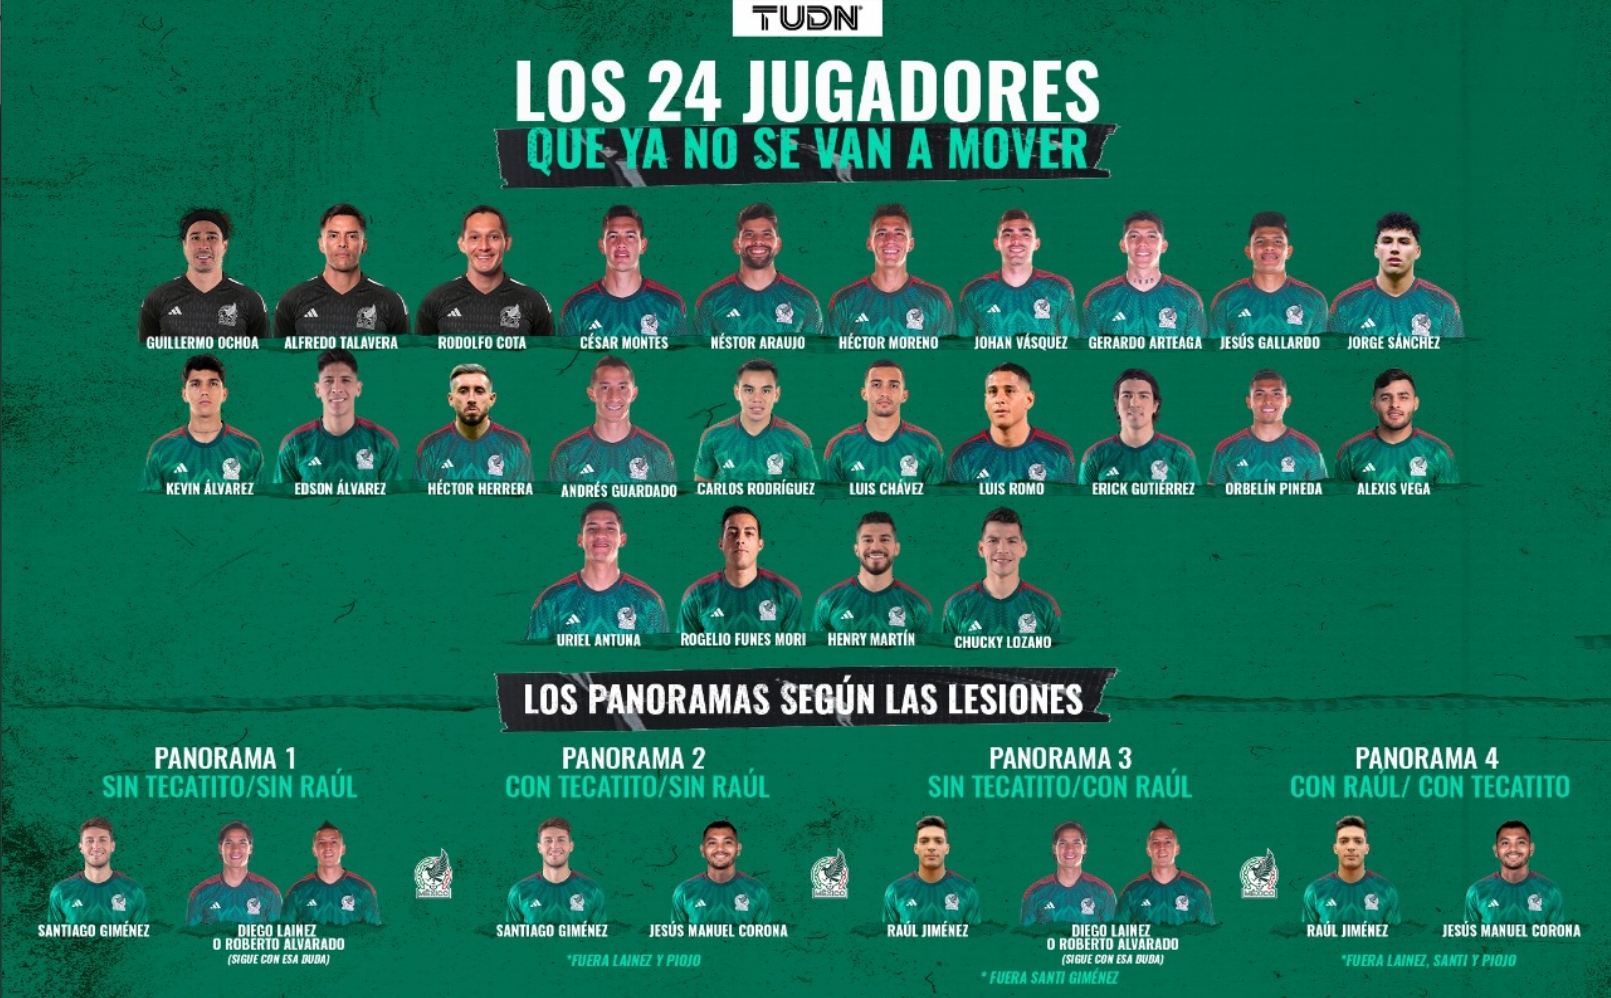 墨西哥足球国家队名单 墨西哥世界杯球员 墨西哥队世界杯战绩 墨西哥美洲杯大名单 墨西哥媒体盘点其国家队世界杯名单，26个名额中已有24人确定